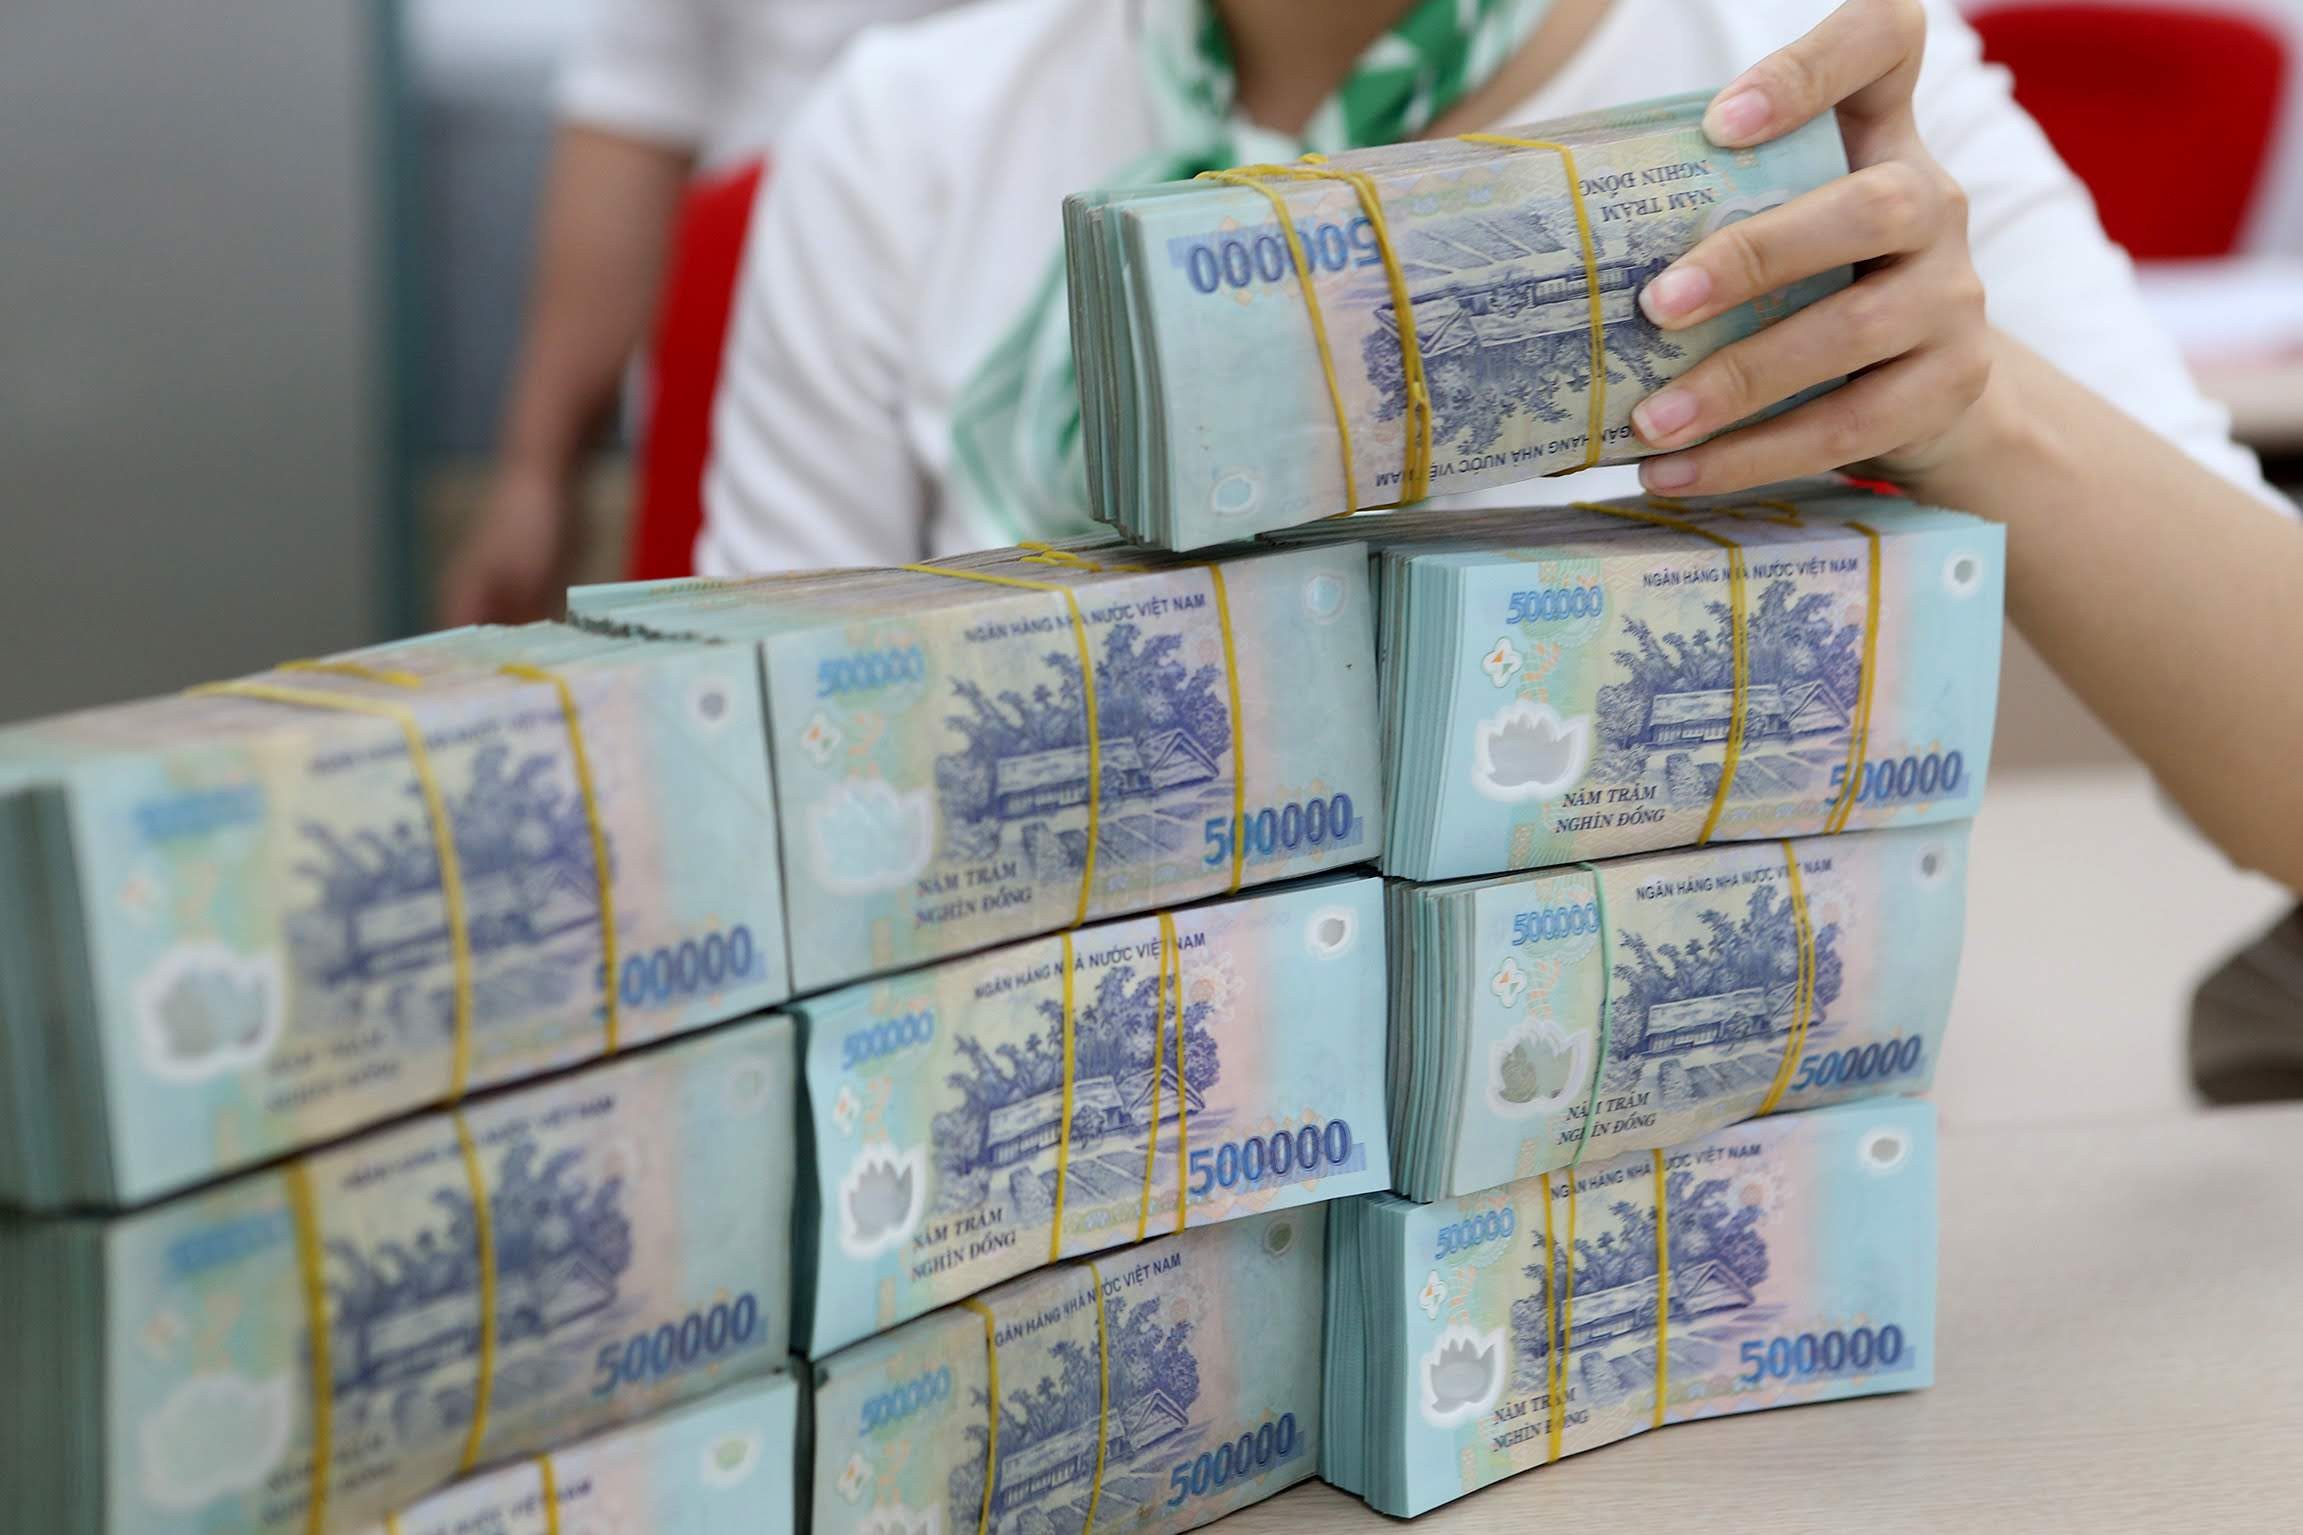 ABBANK là một trong những ngân hàng hàng đầu tại Việt Nam, với lợi nhuận khổng lồ được thể hiện qua hình ảnh tiền Việt Nam. Hãy cùng xem những bức ảnh đầy sắc màu và đẹp mắt này để hiểu rõ hơn về sự phát triển và tiềm năng của ngân hàng này.